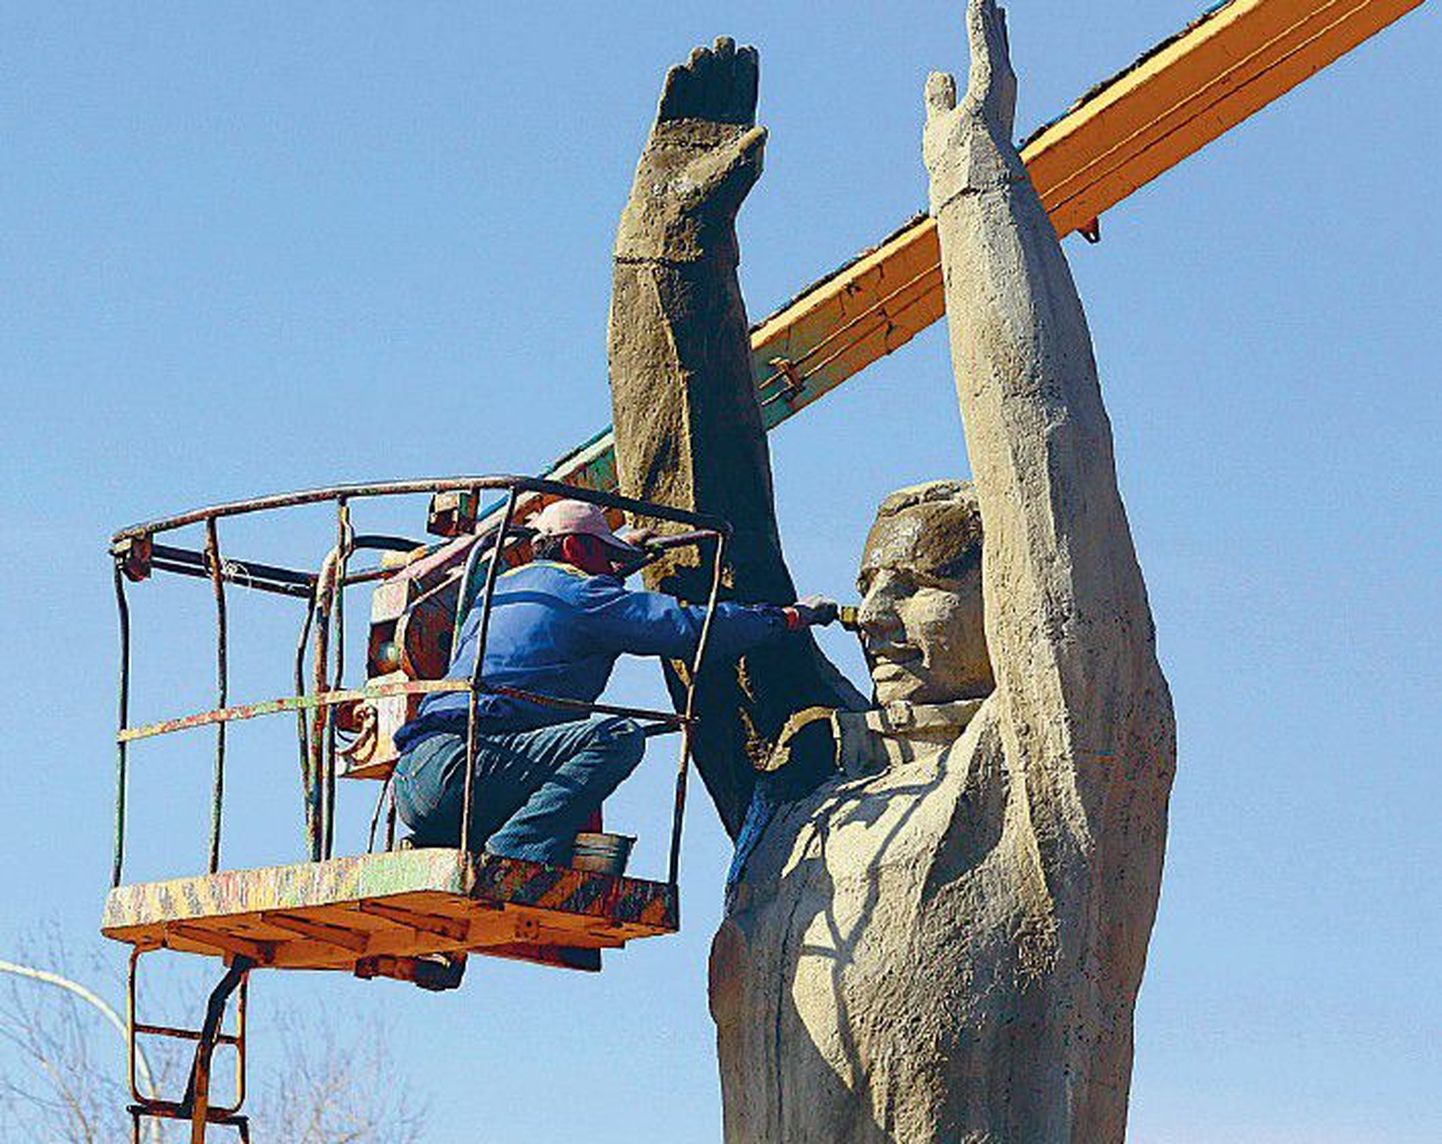 Муниципальный служащий обновляет памятник Юрию Гагарину на космодроме Байконур в Казахстане.